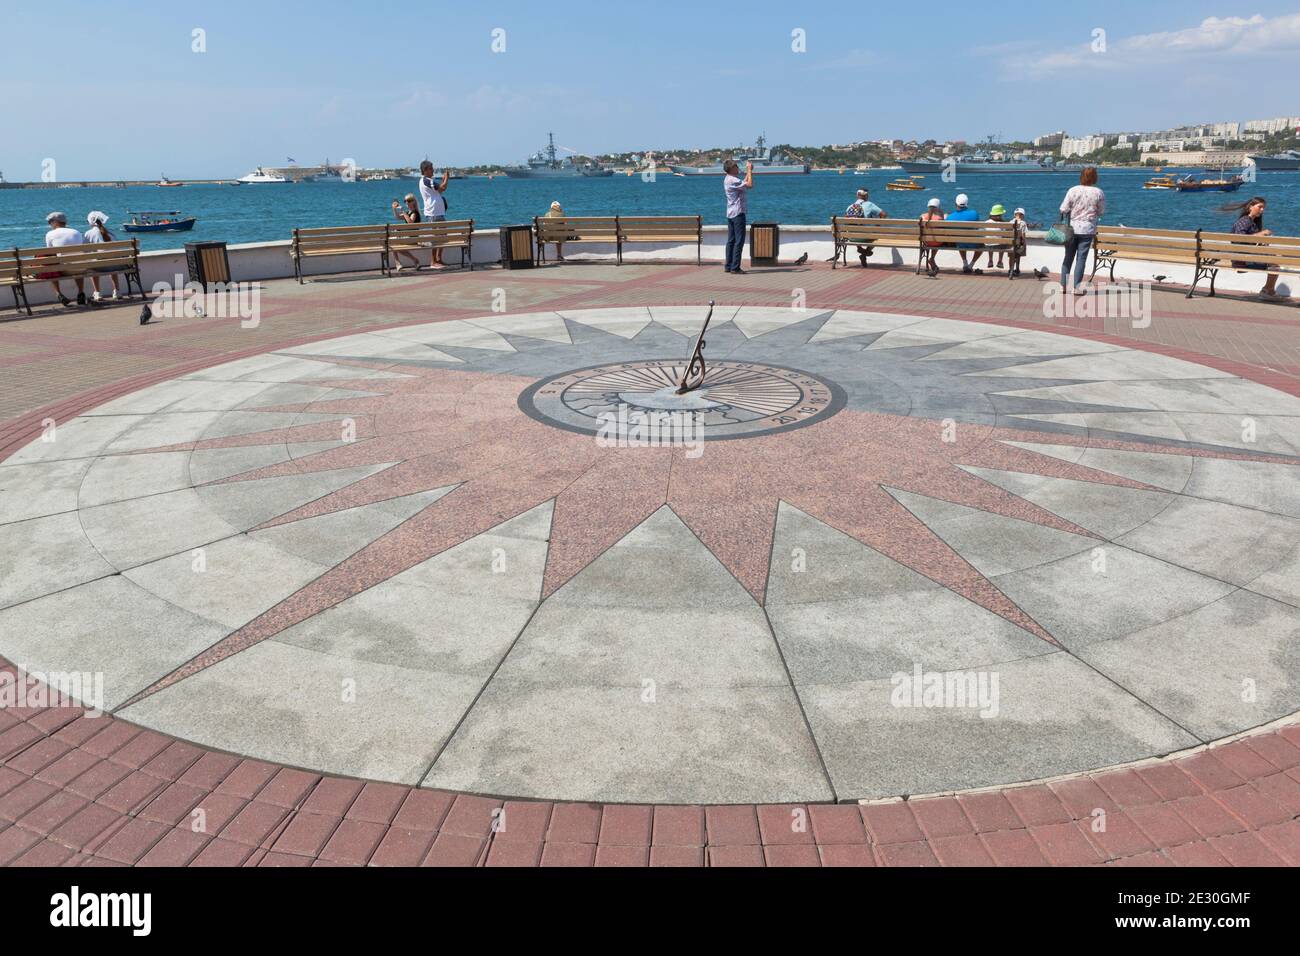 Sevastopol, Crimea, Russia - July 26, 2020: Sundial on Primorsky Boulevard in the city of Sevastopol, Crimea Stock Photo